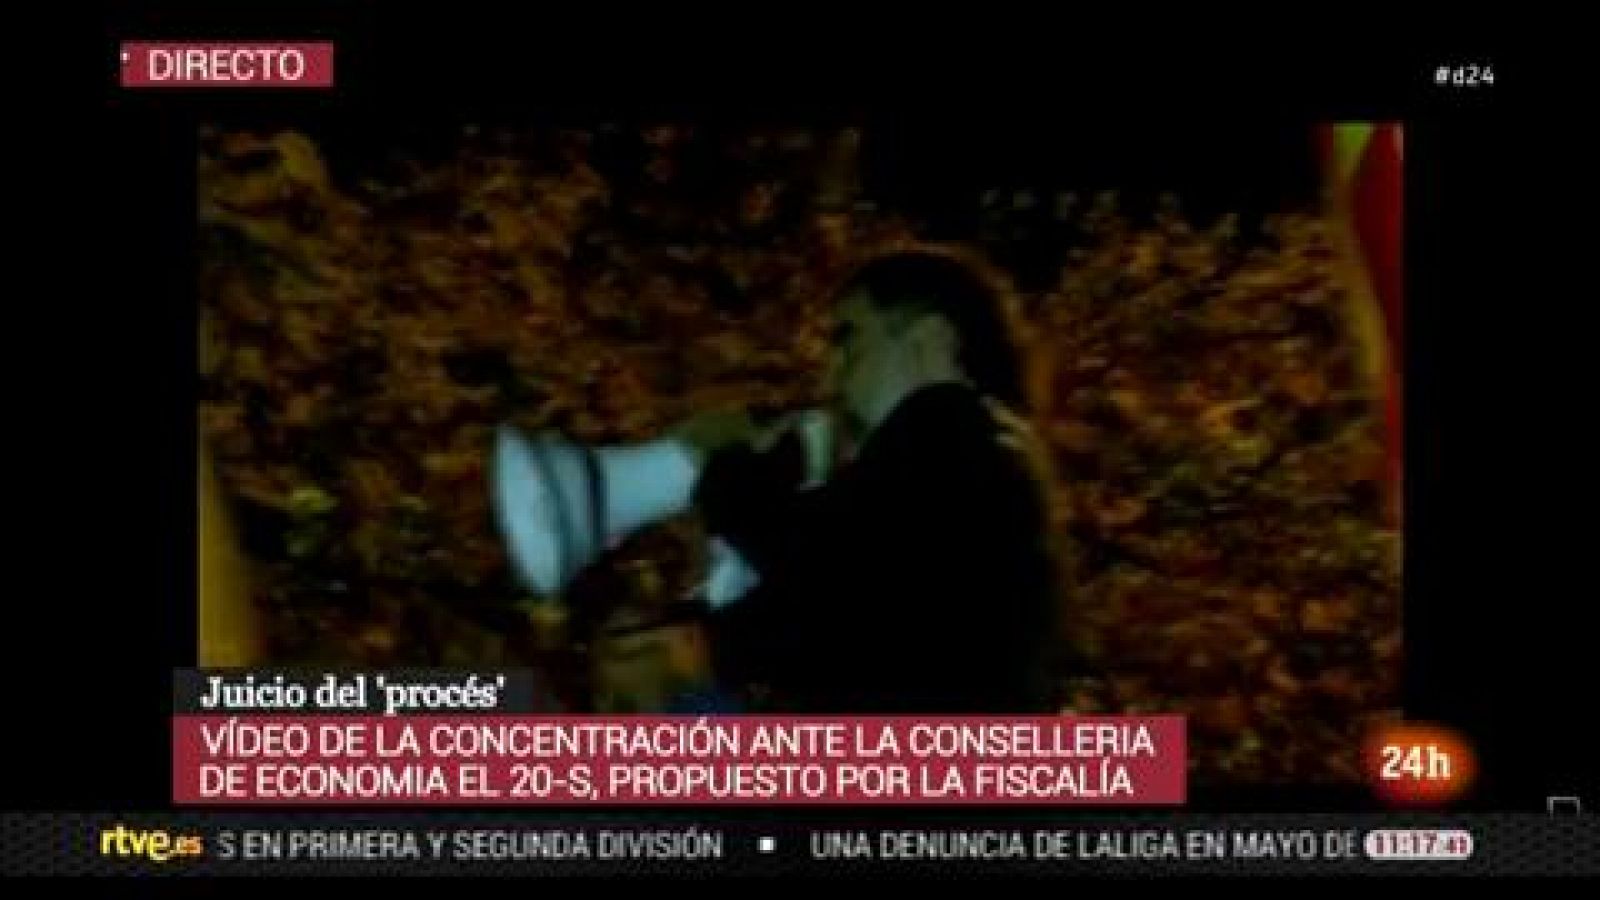 Vídeo propuesto por la Fiscalía donde se ve a 'los Jordis' subidos a un coche de la Guardia Civil frente a Economía